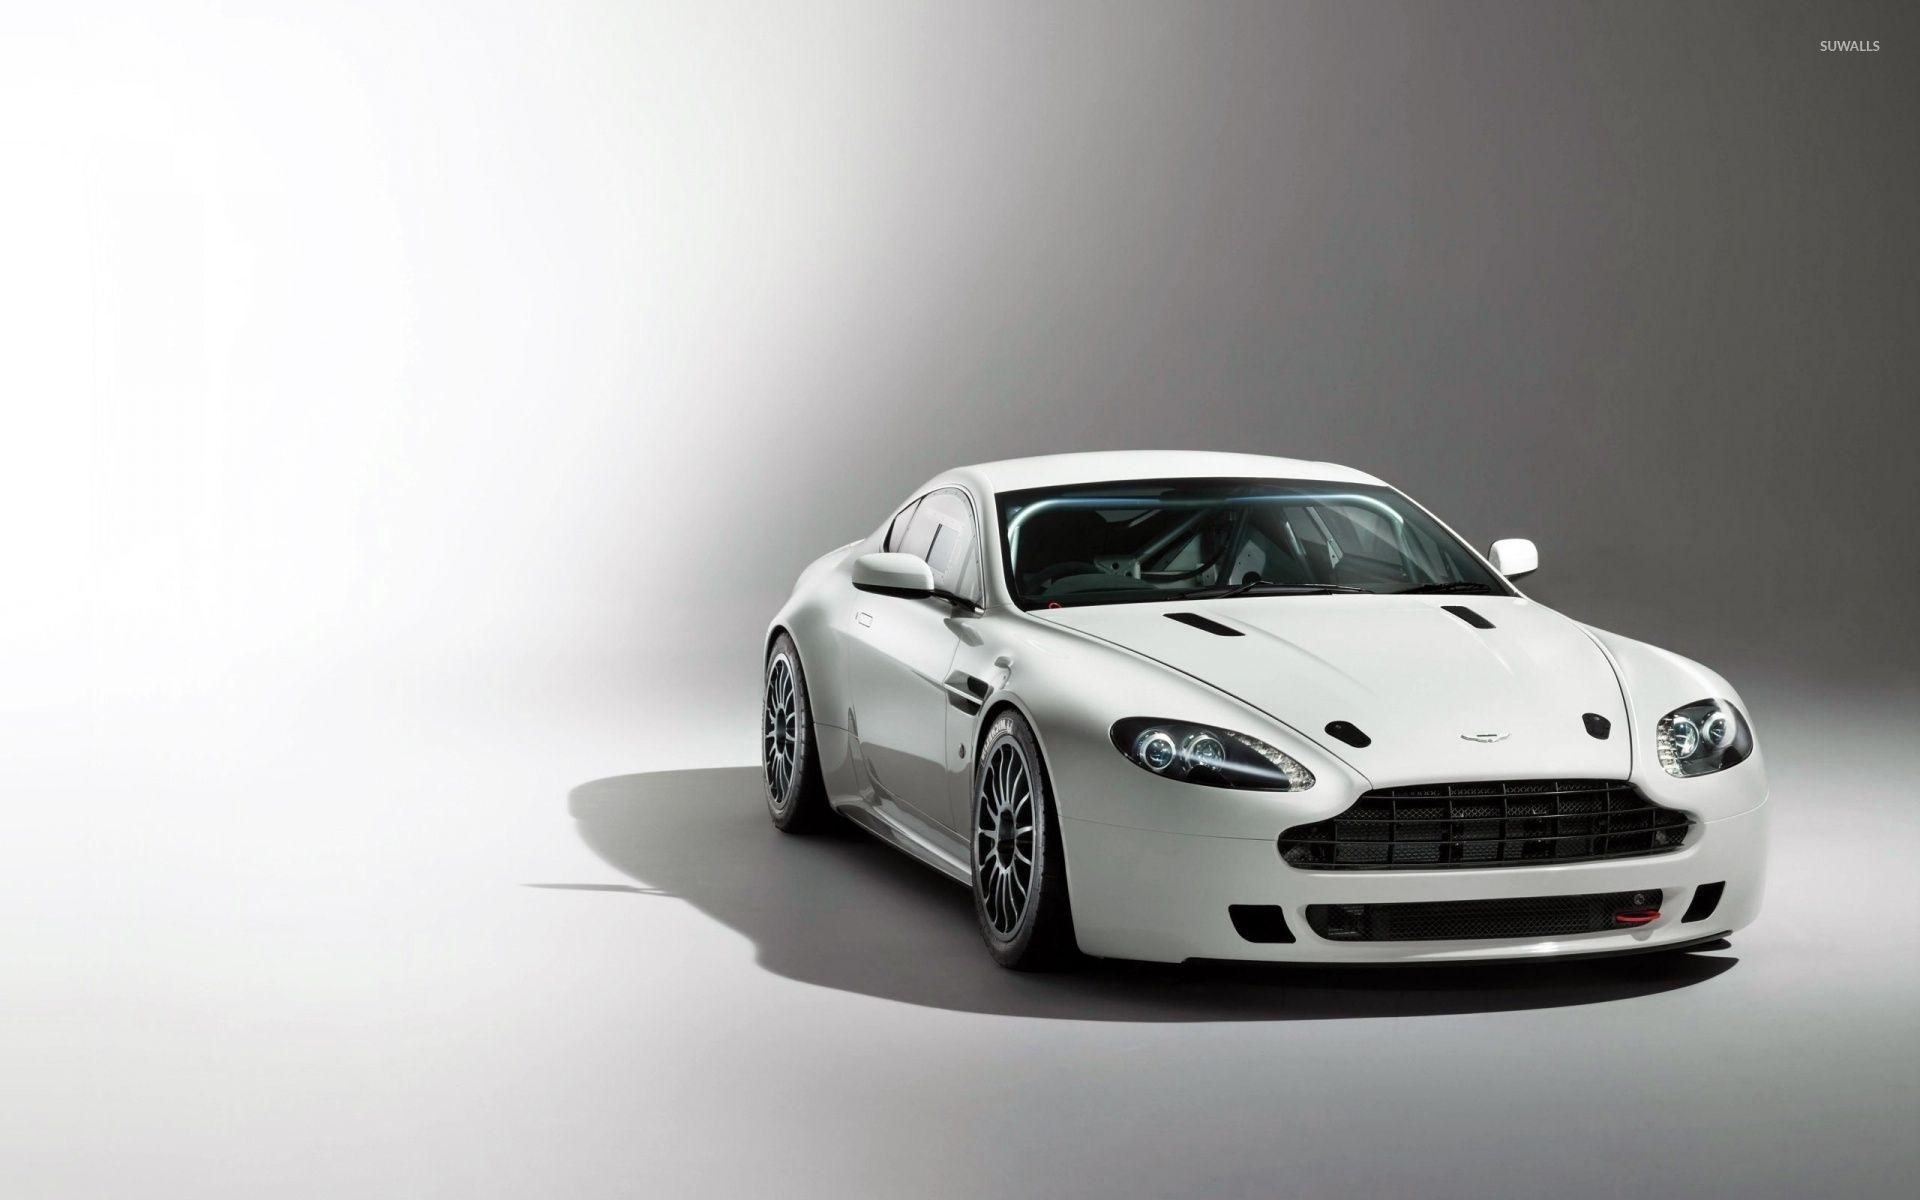 Aston Martin Vantage Wallpapers